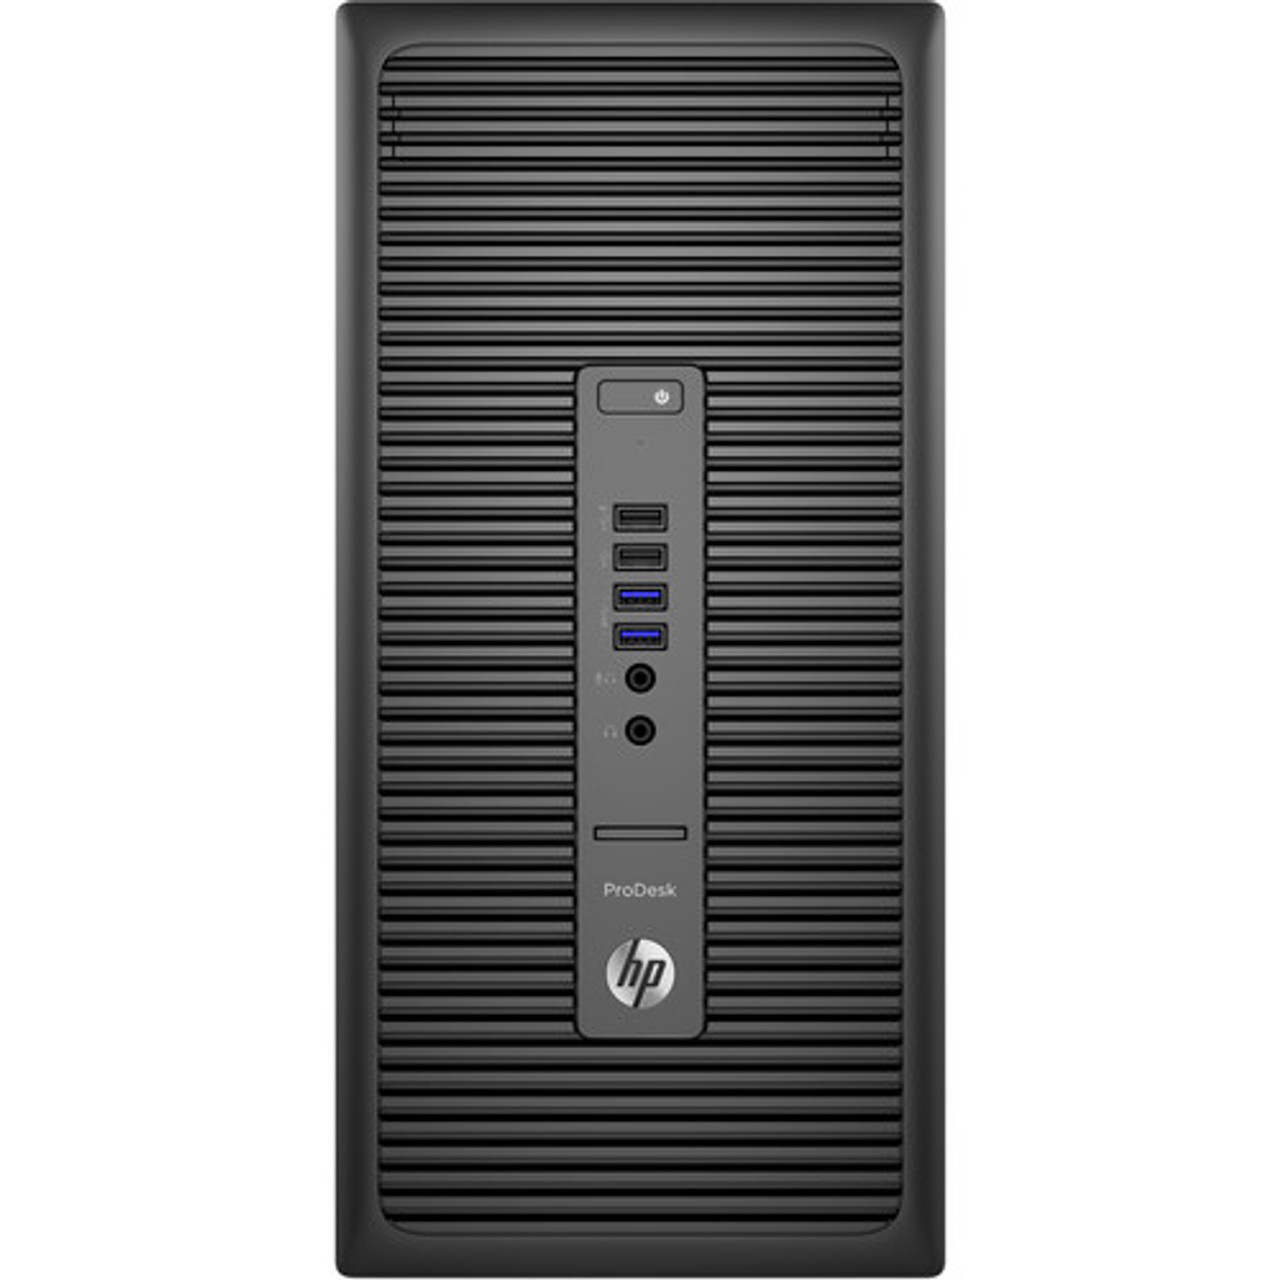 HP ProDesk 600 G2 MT i7, 16GB, 256GB SSD